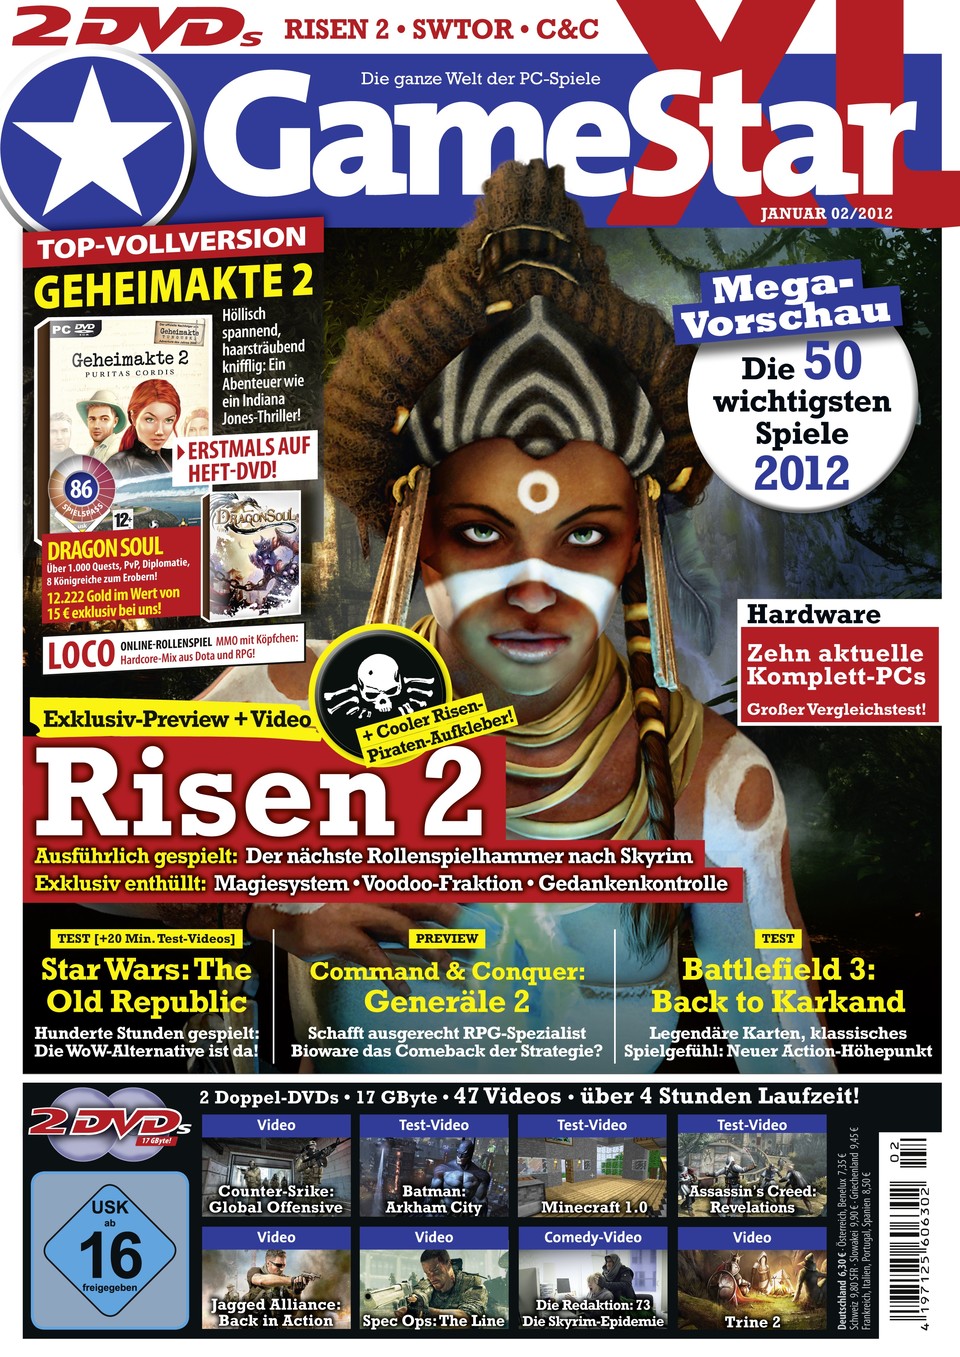 Die neue GameStar-Ausgabe 02/2012 ab 28. Dezember am Kiosk.